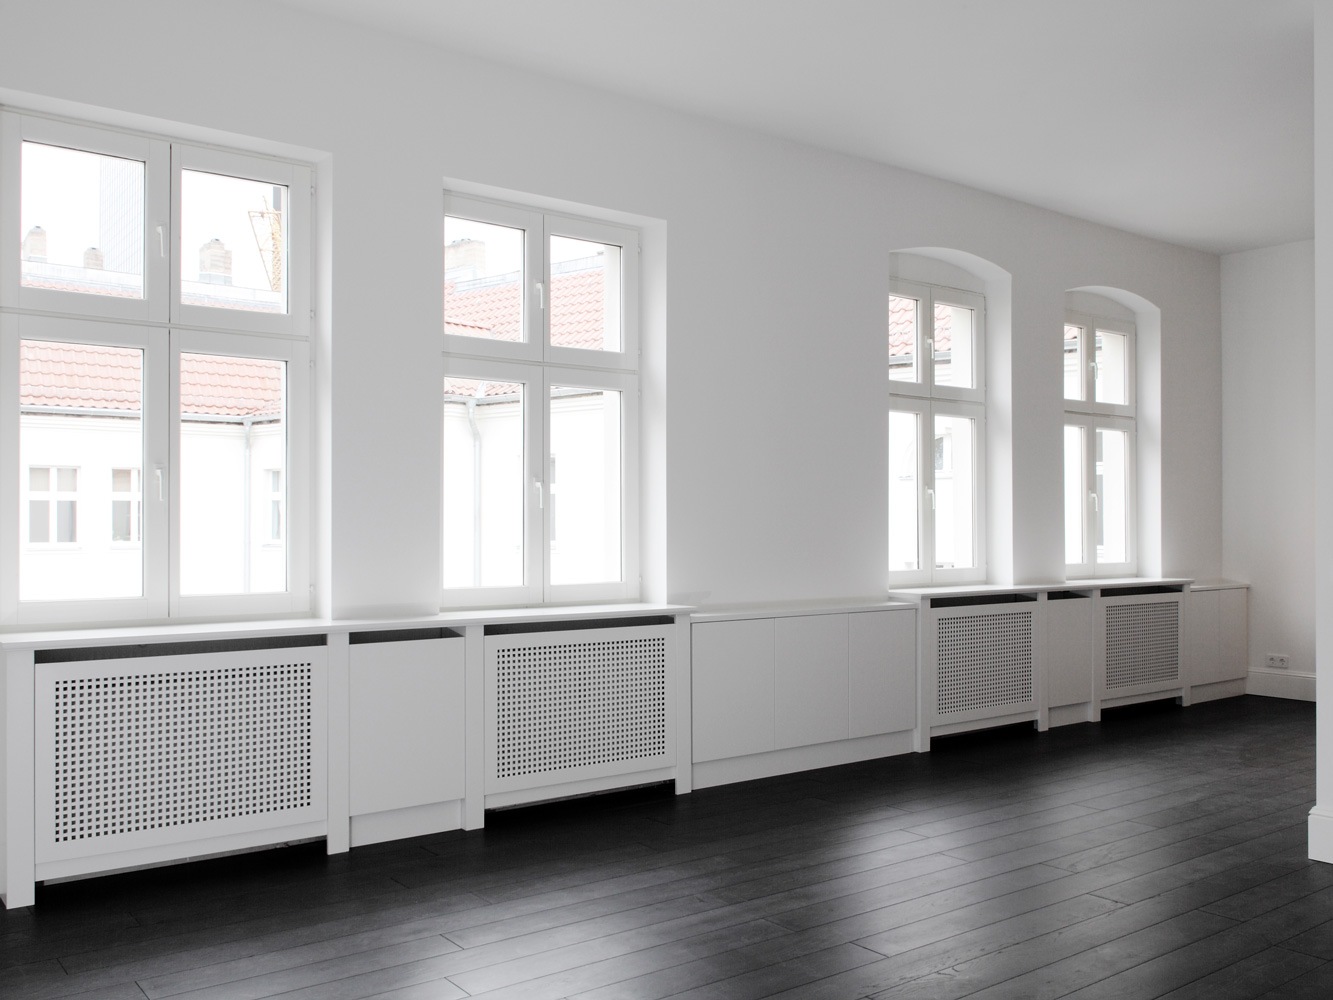 vogel architektur planckstrasse berlin wohnen ausbau umbau innenraum wohnzimmer